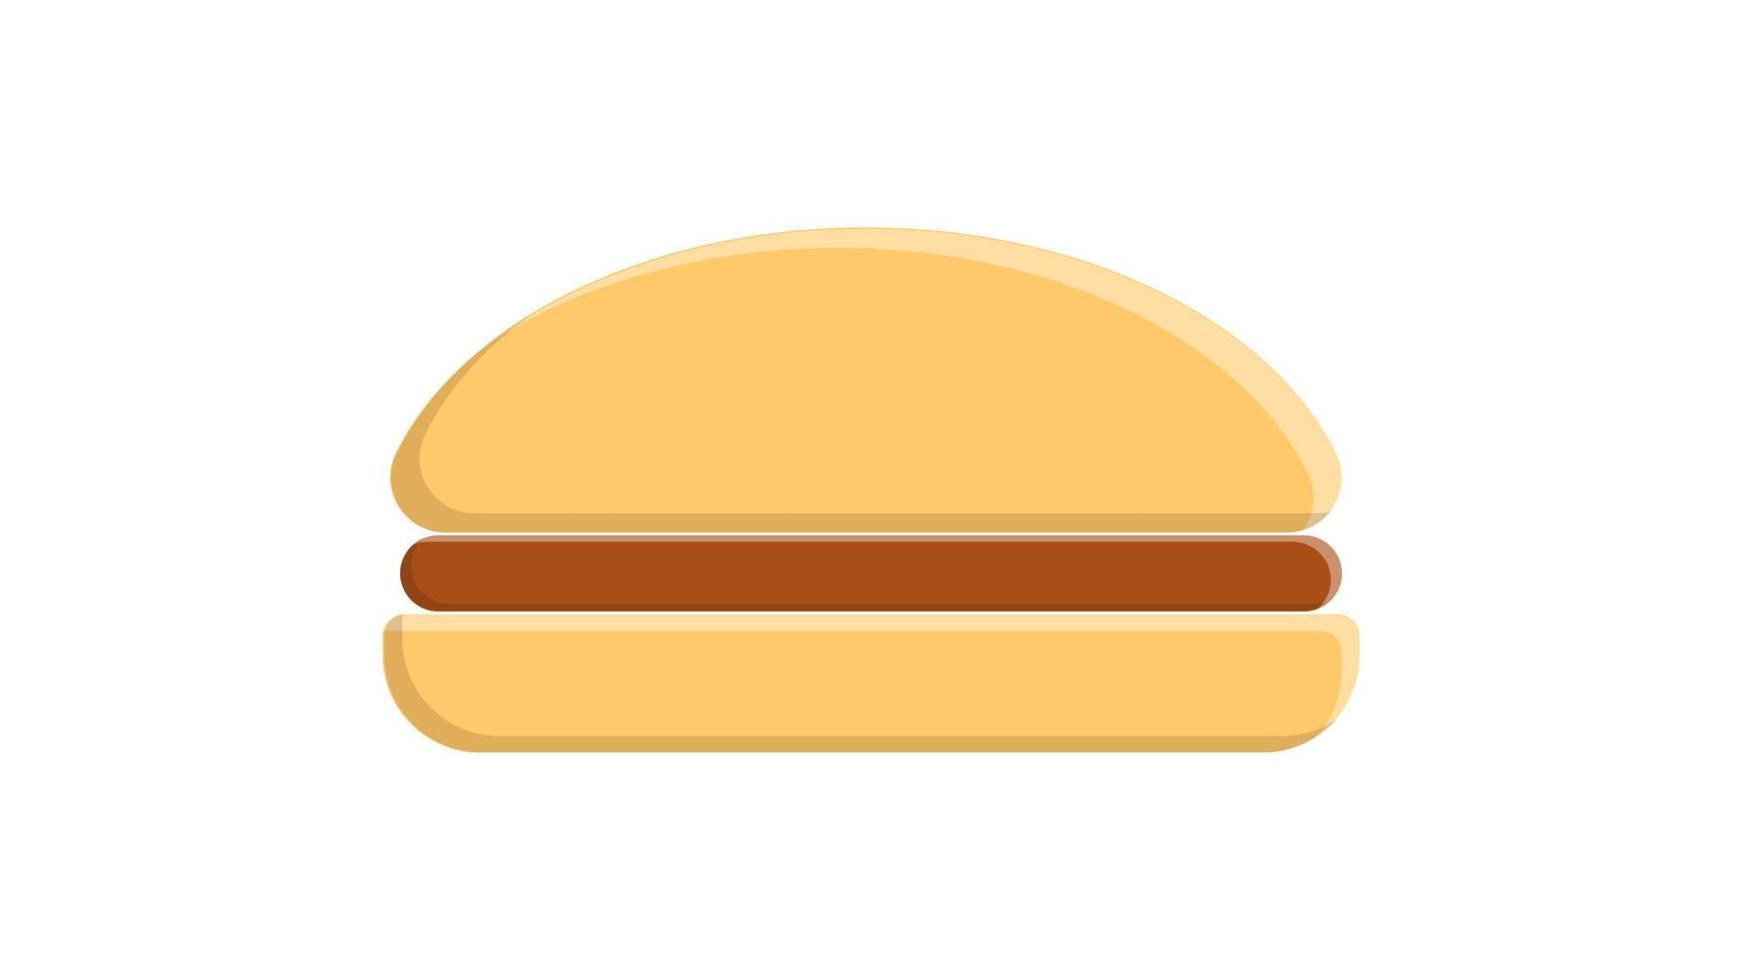 färgrik och ljus burger på en vit bakgrund, vektor illustration. skräp mat, utsökt snabb mat lunch. burger med värma brun fyllning. social media ikon, tapet